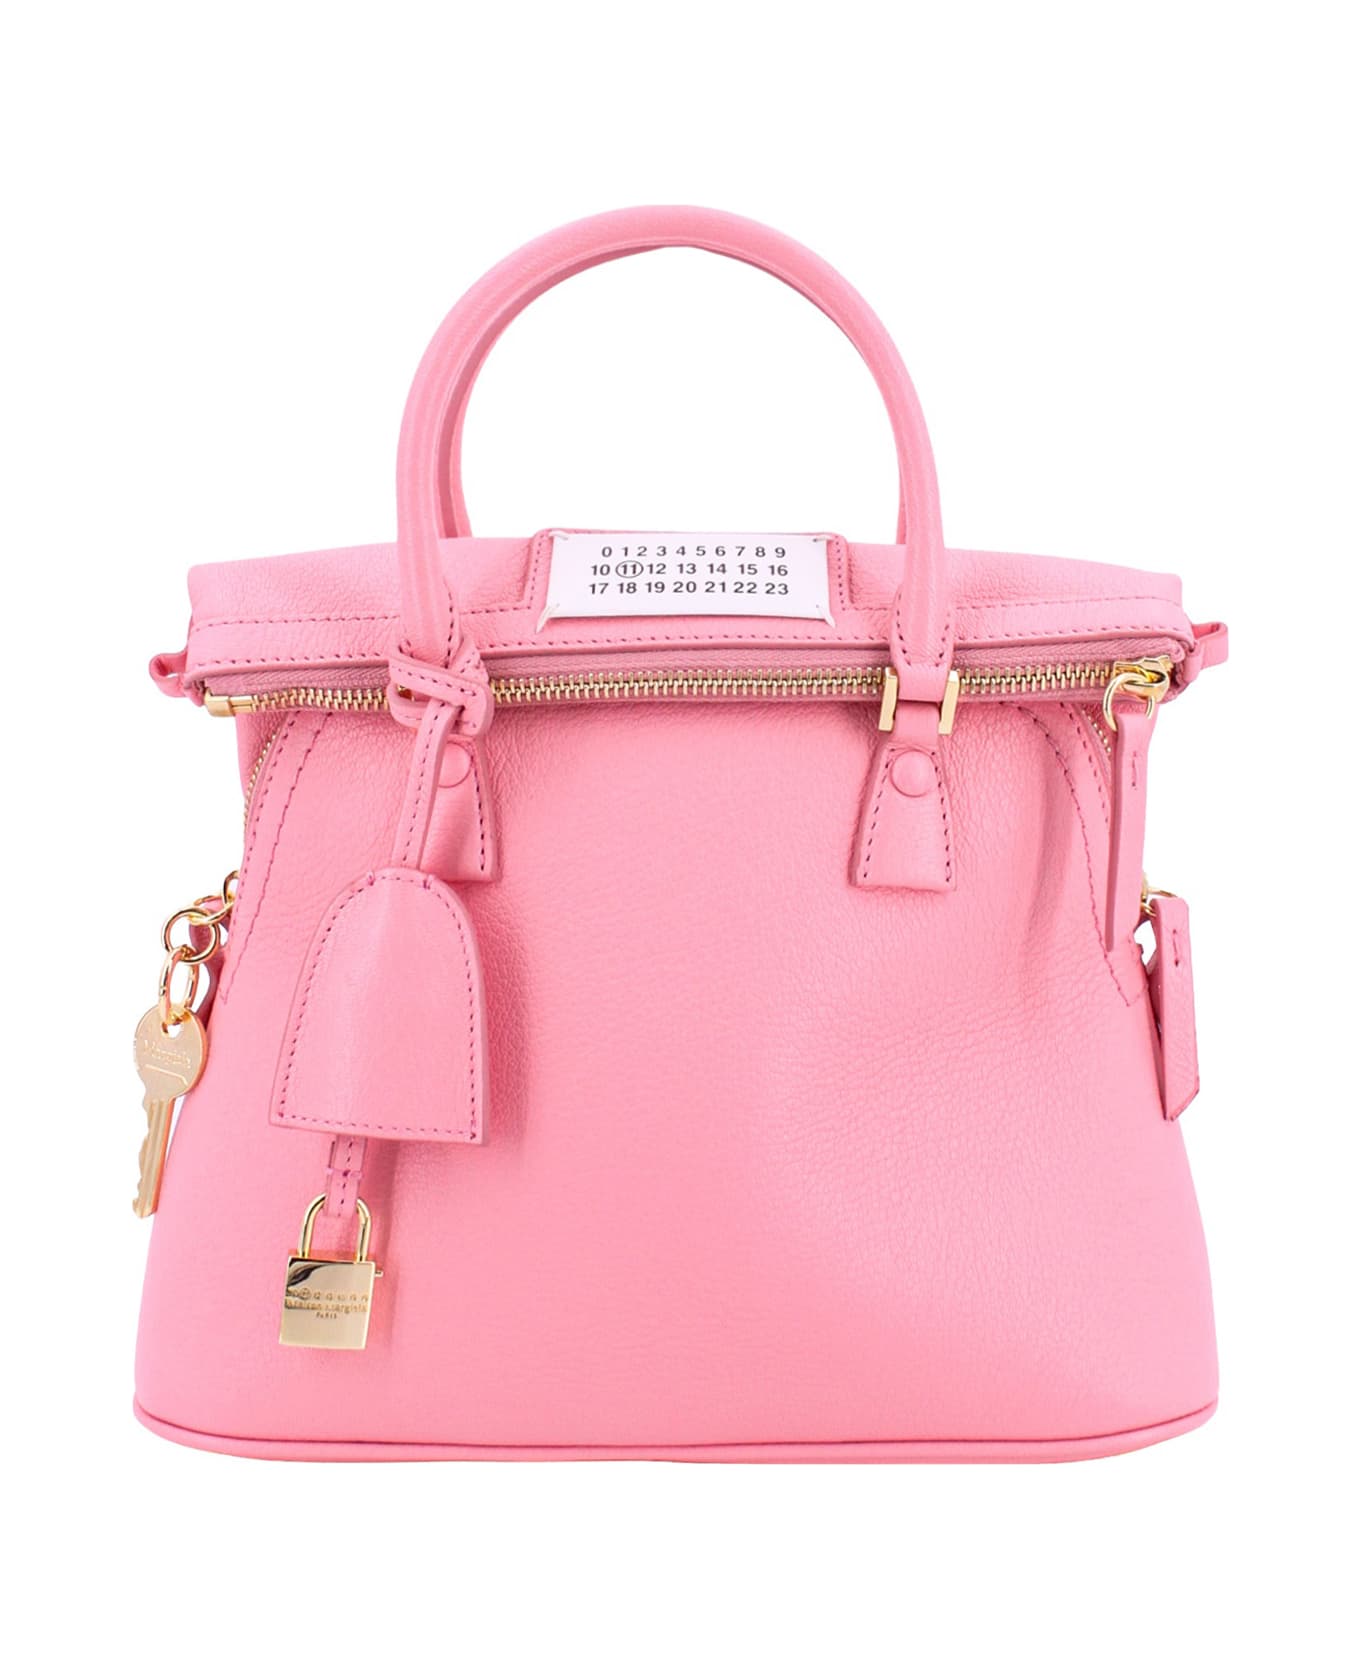 Maison Margiela 5ac Classique Handbag - Pink